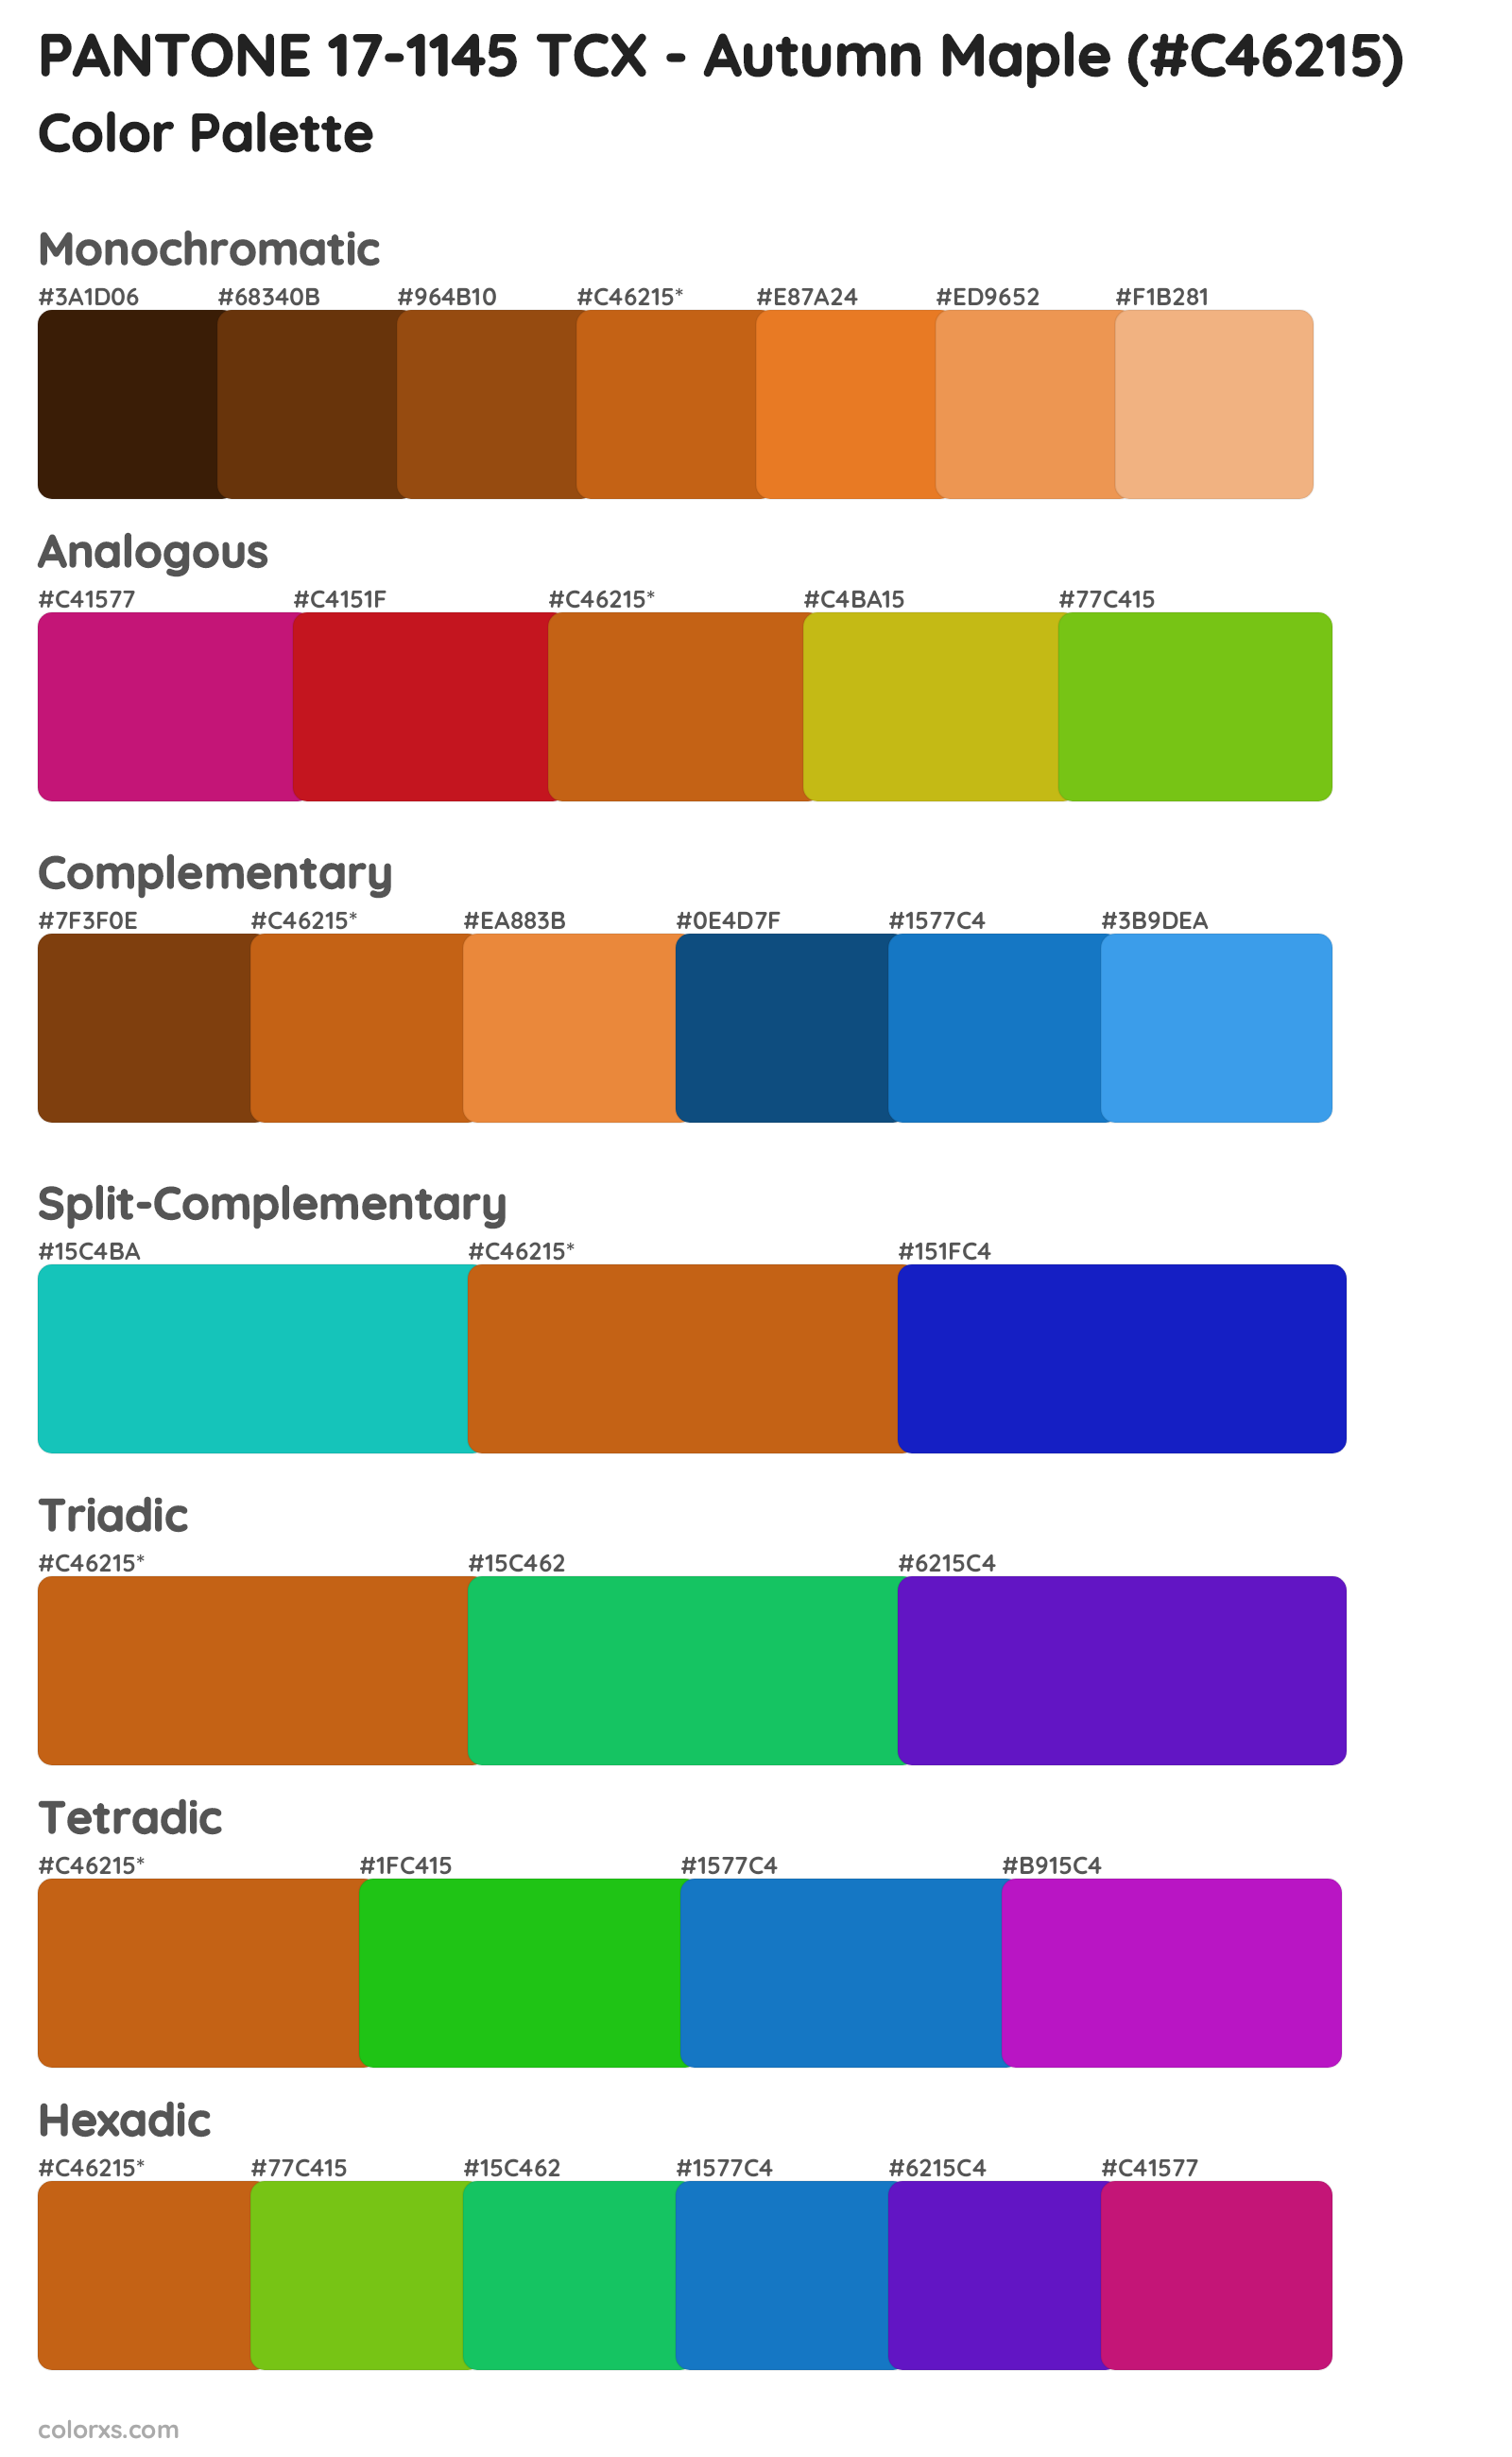 PANTONE 17-1145 TCX - Autumn Maple Color Scheme Palettes